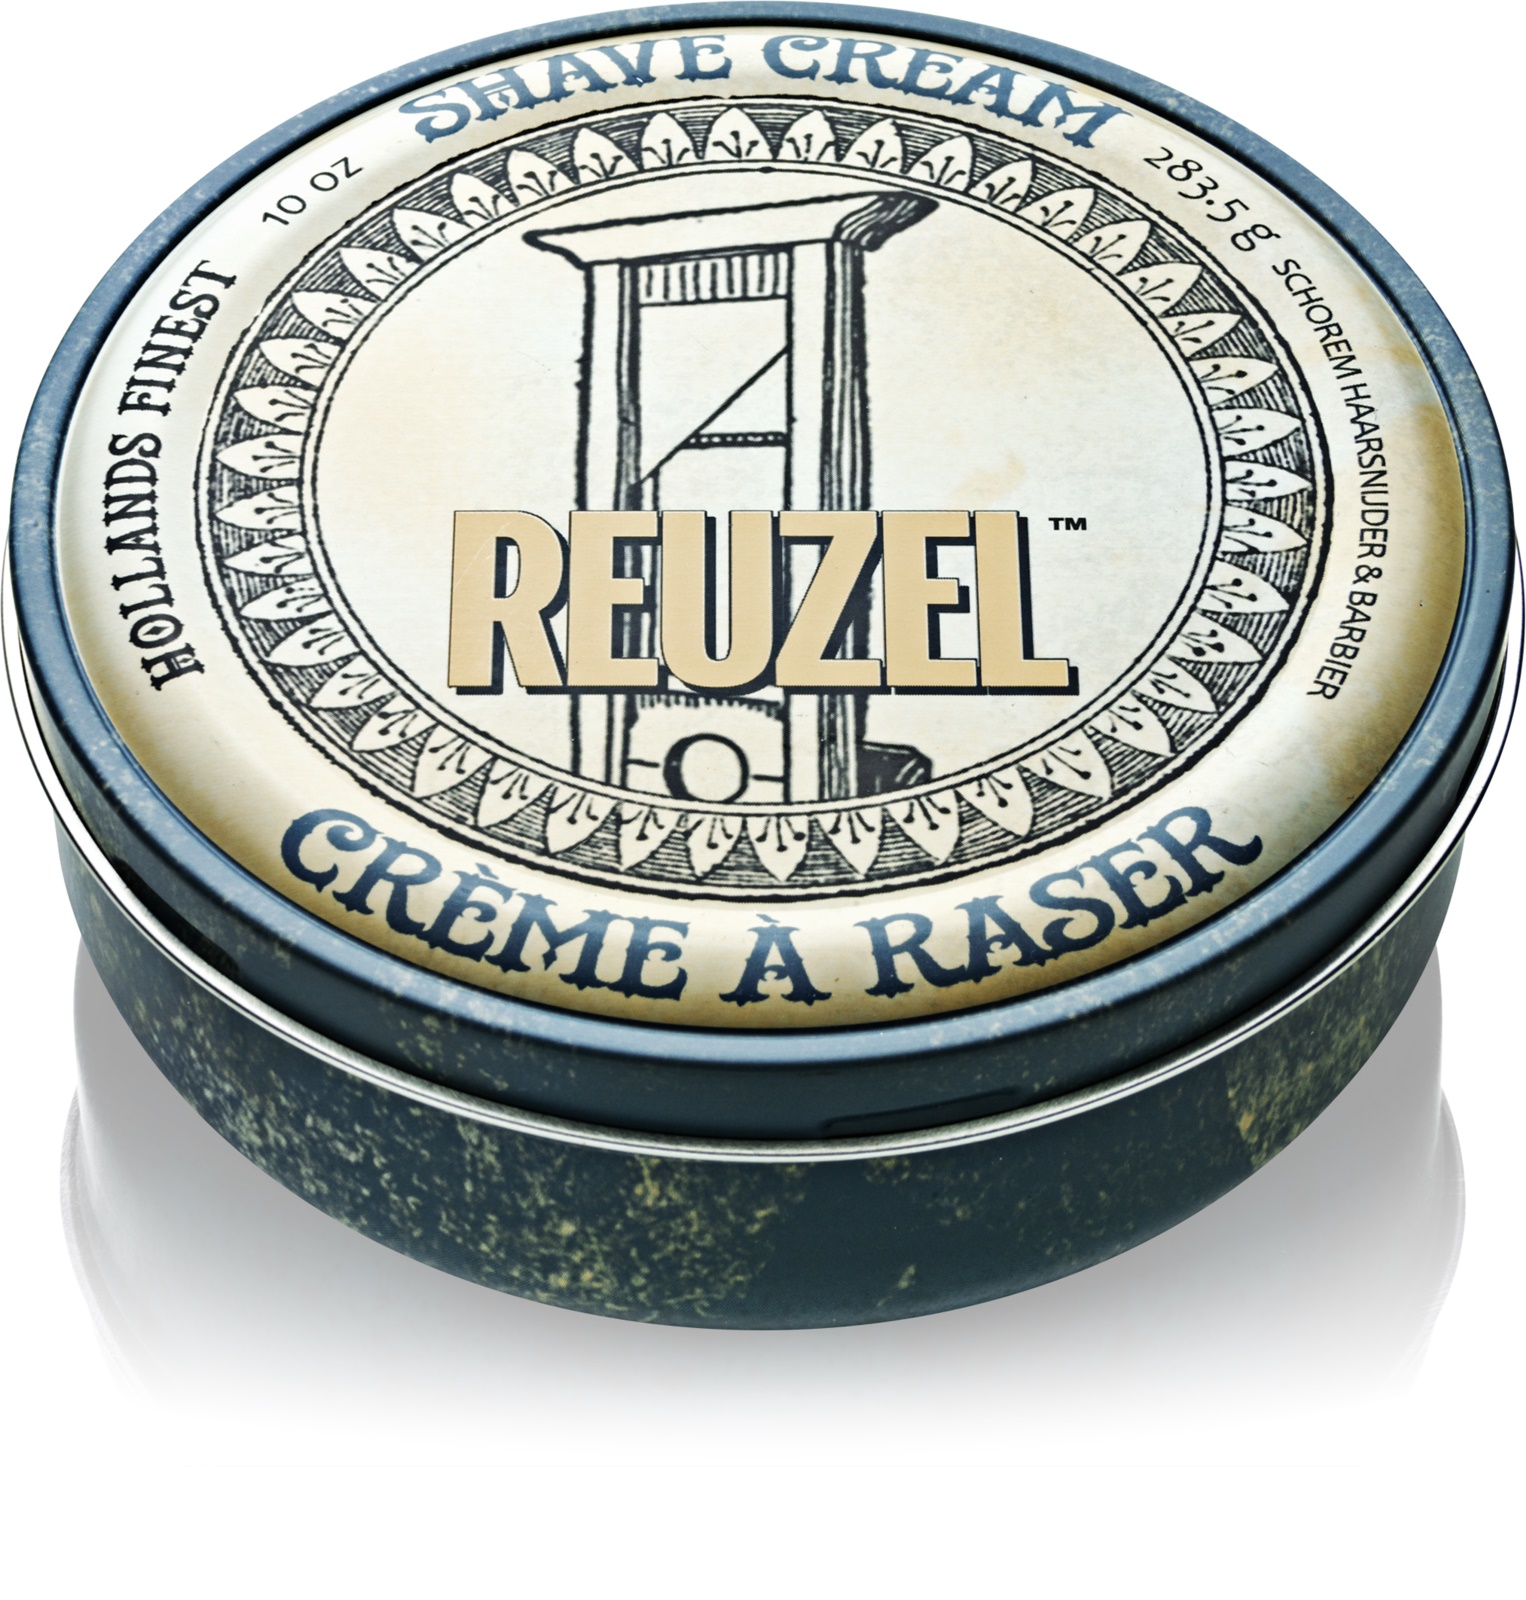 REUZEL Shave Cream 283,5 g